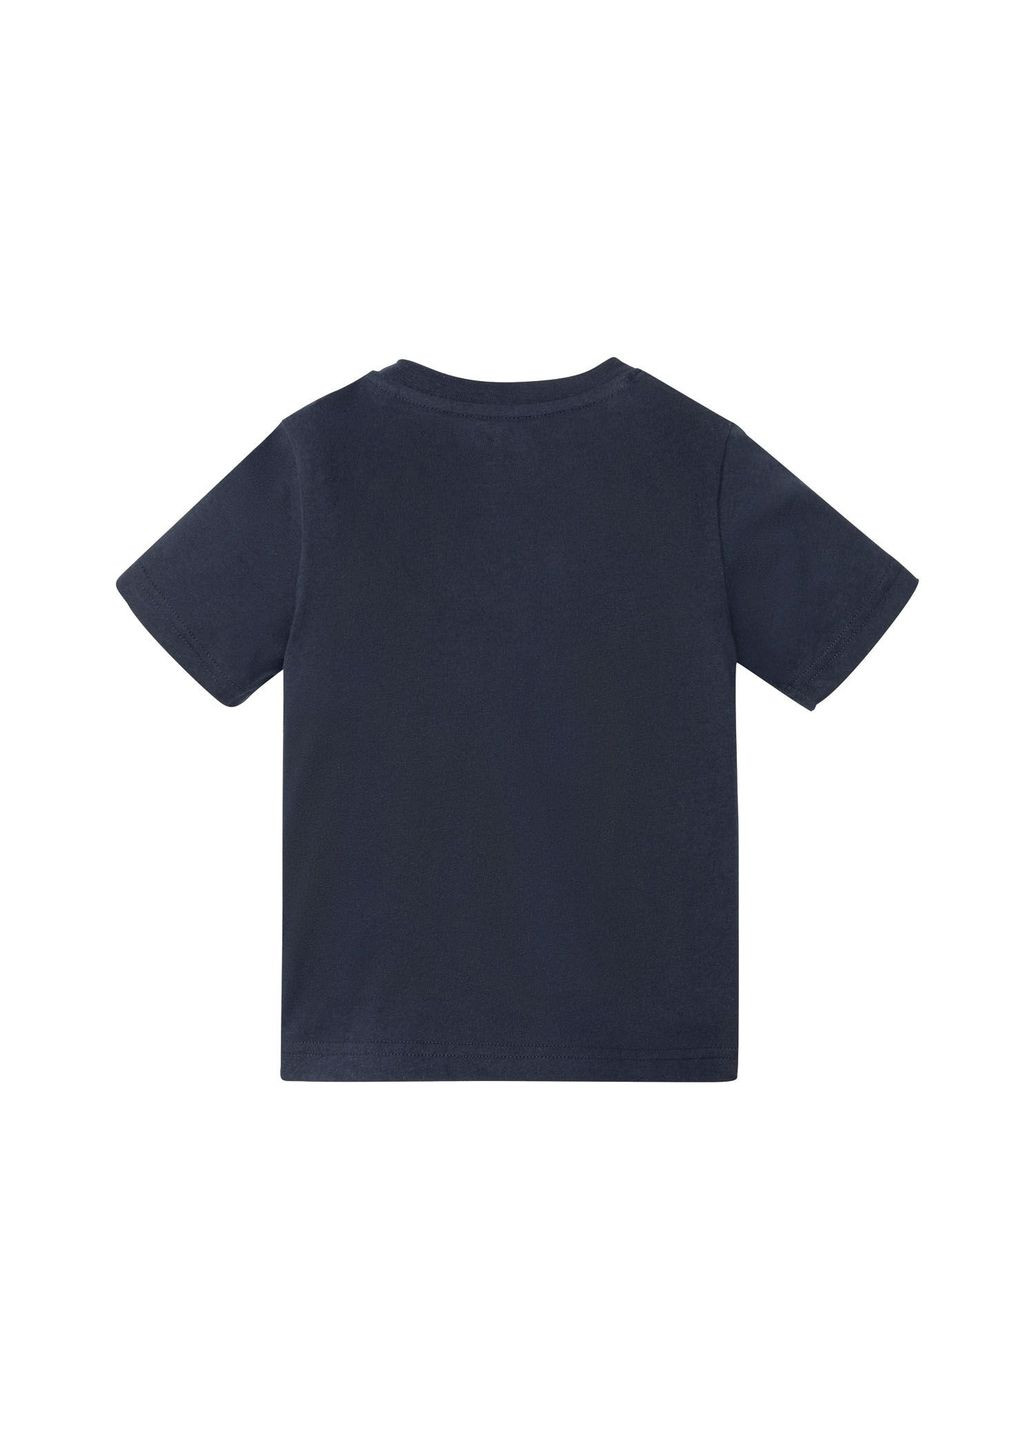 Темно-синя піжама (футболка і шорти) для хлопчика 349607 темно-синій Lupilu